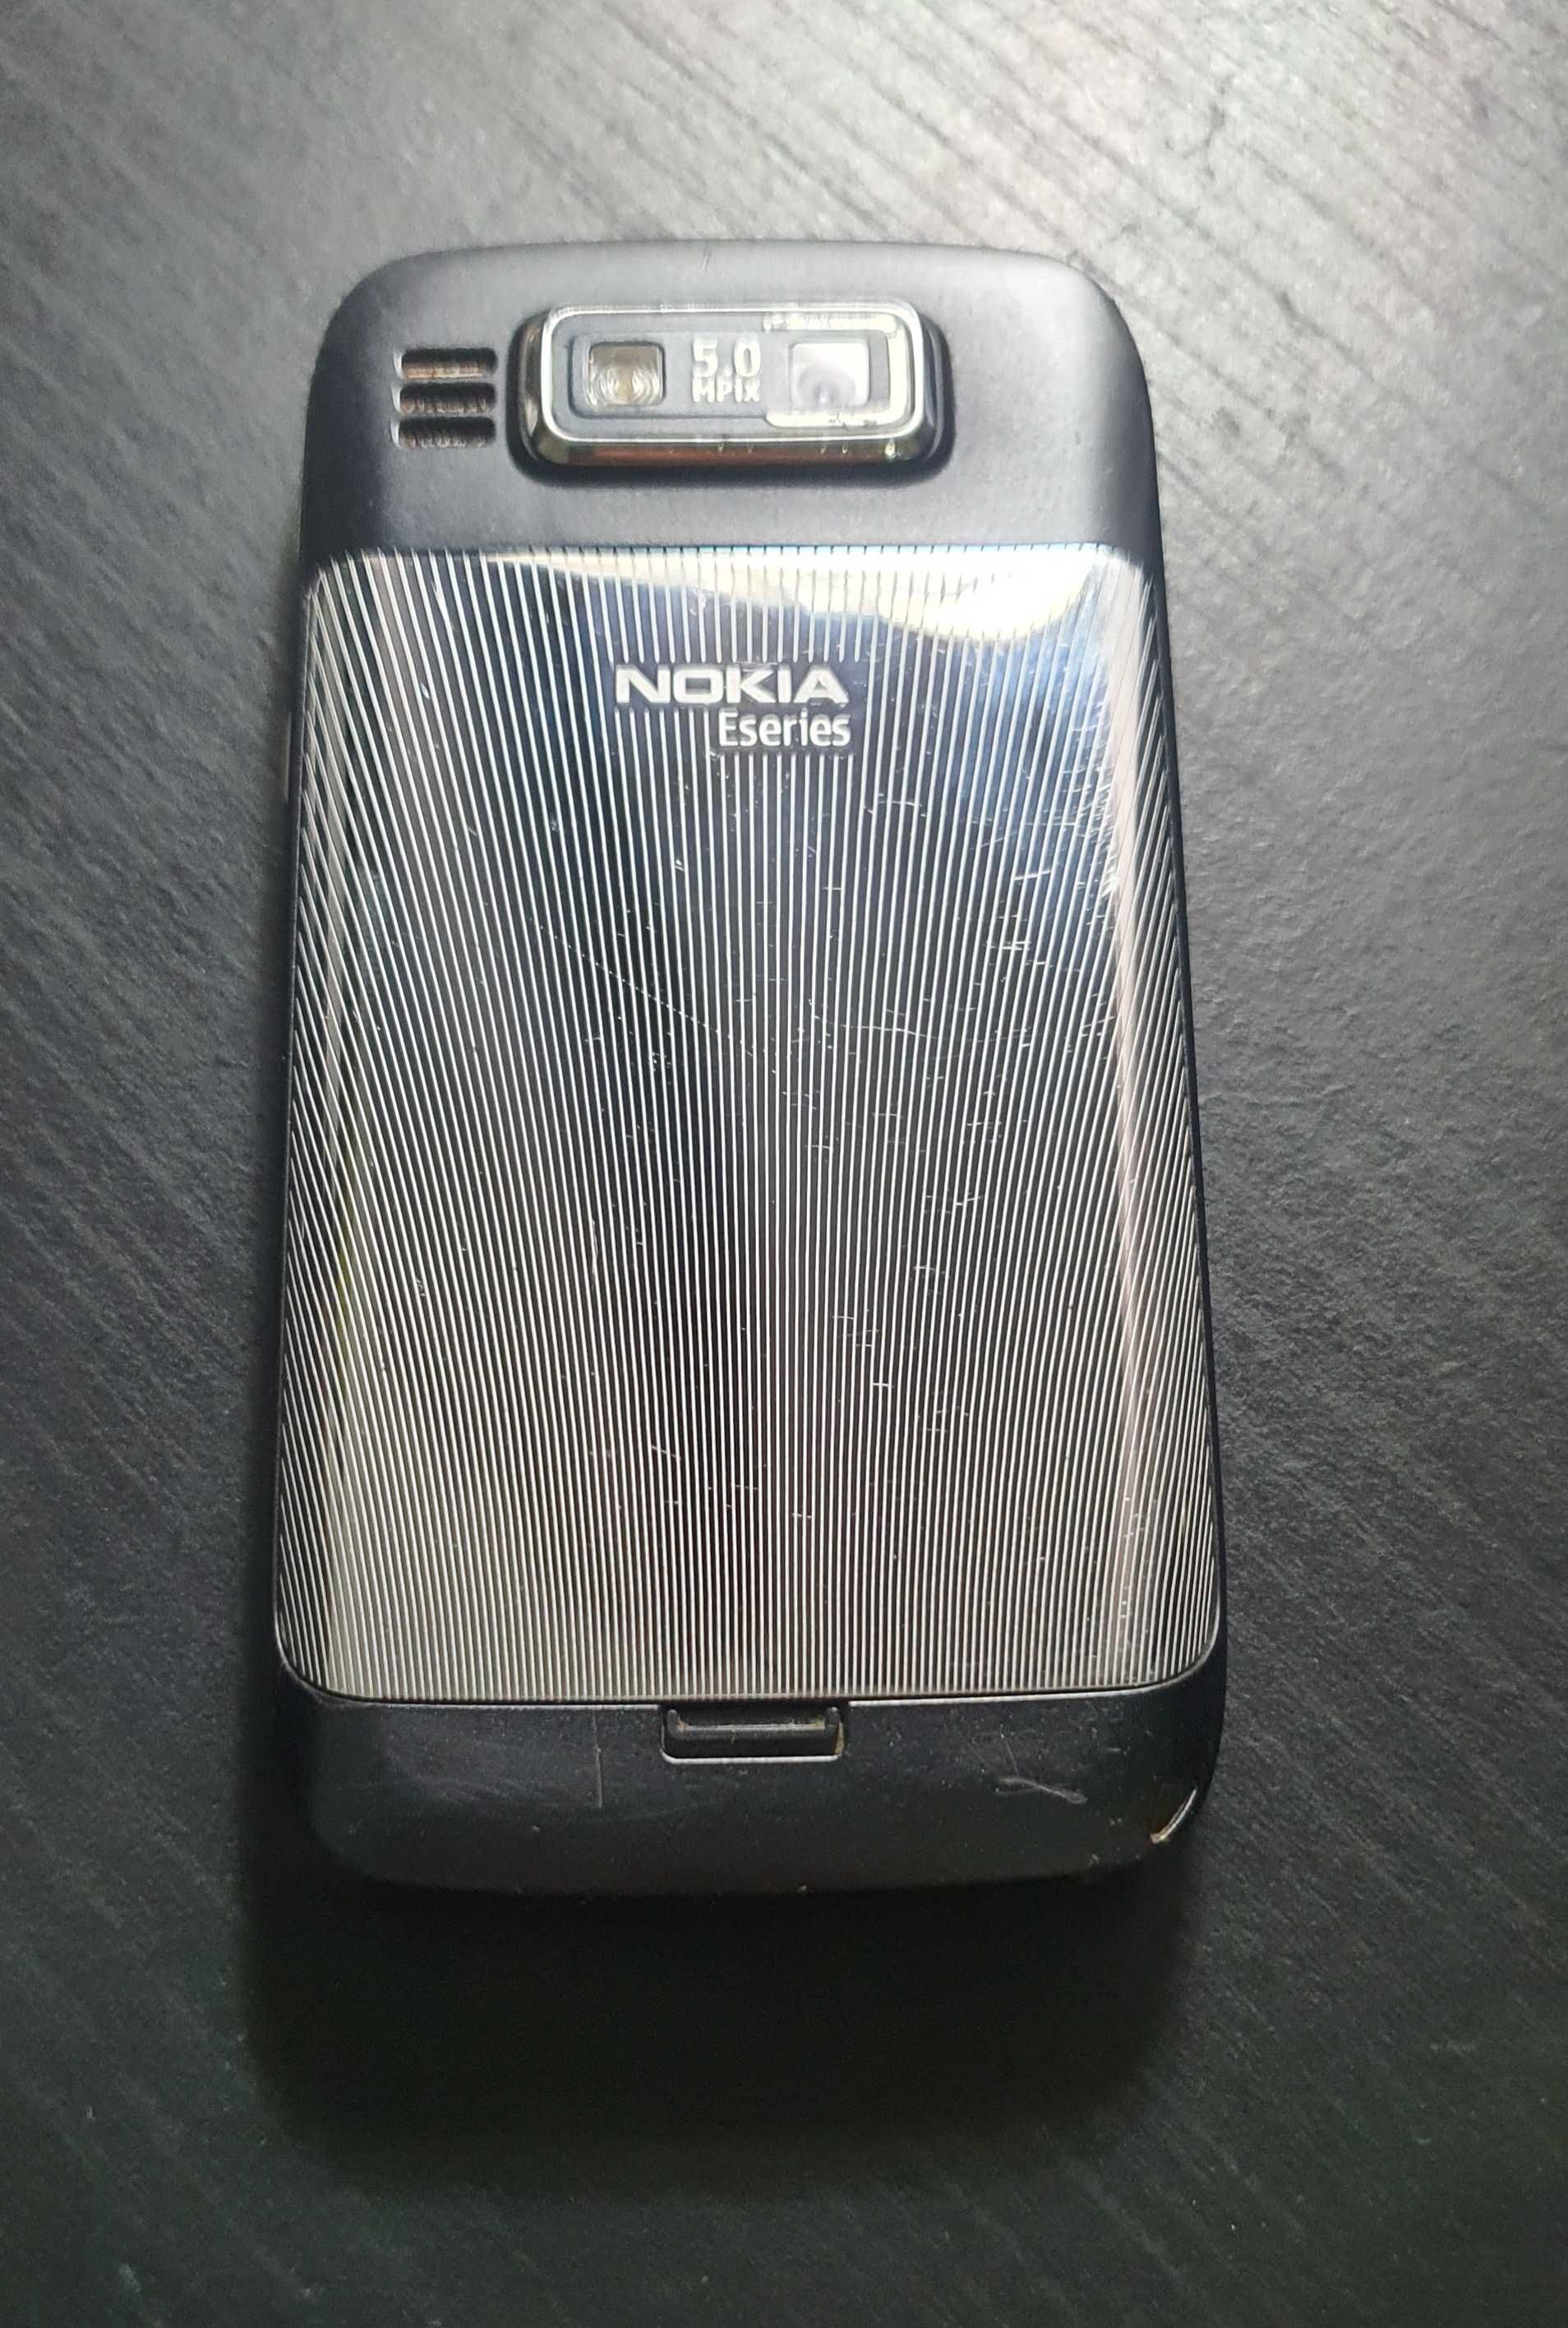 Nokia E72 Navigation - Bom estado